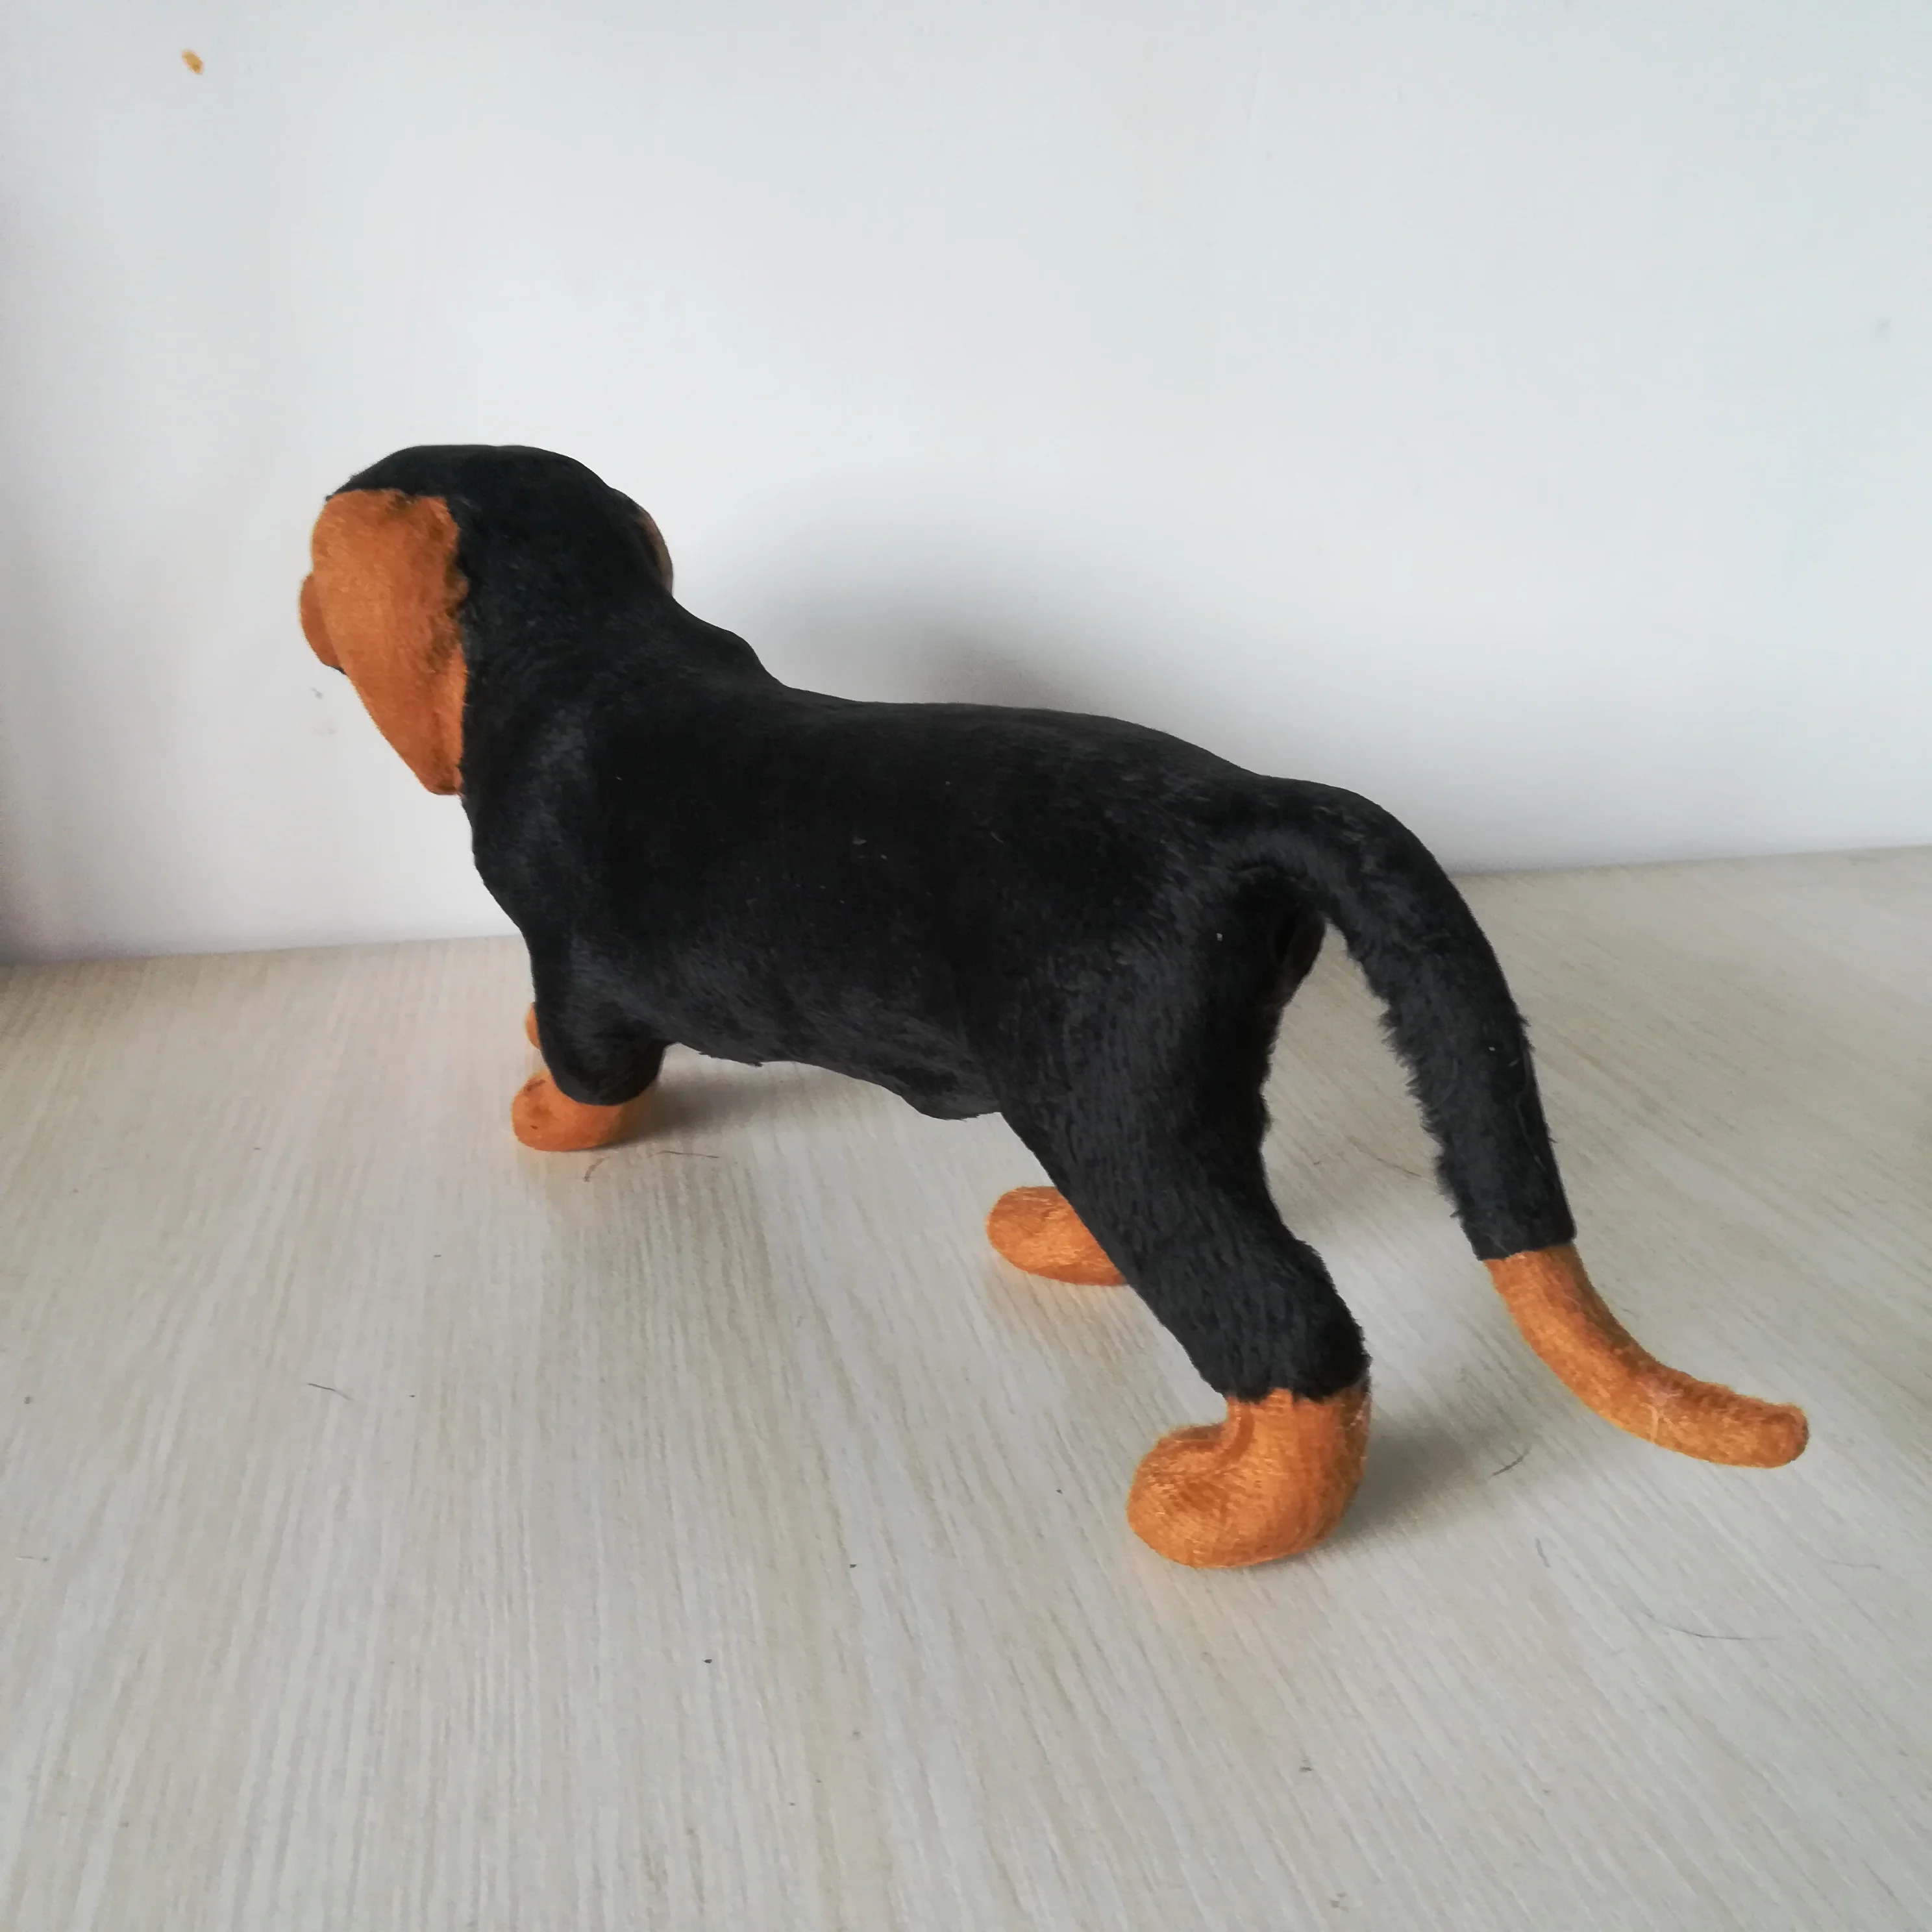 Около 33x13 см реальная игрушка Черная такса собака полиэтилен и меха пропеллер